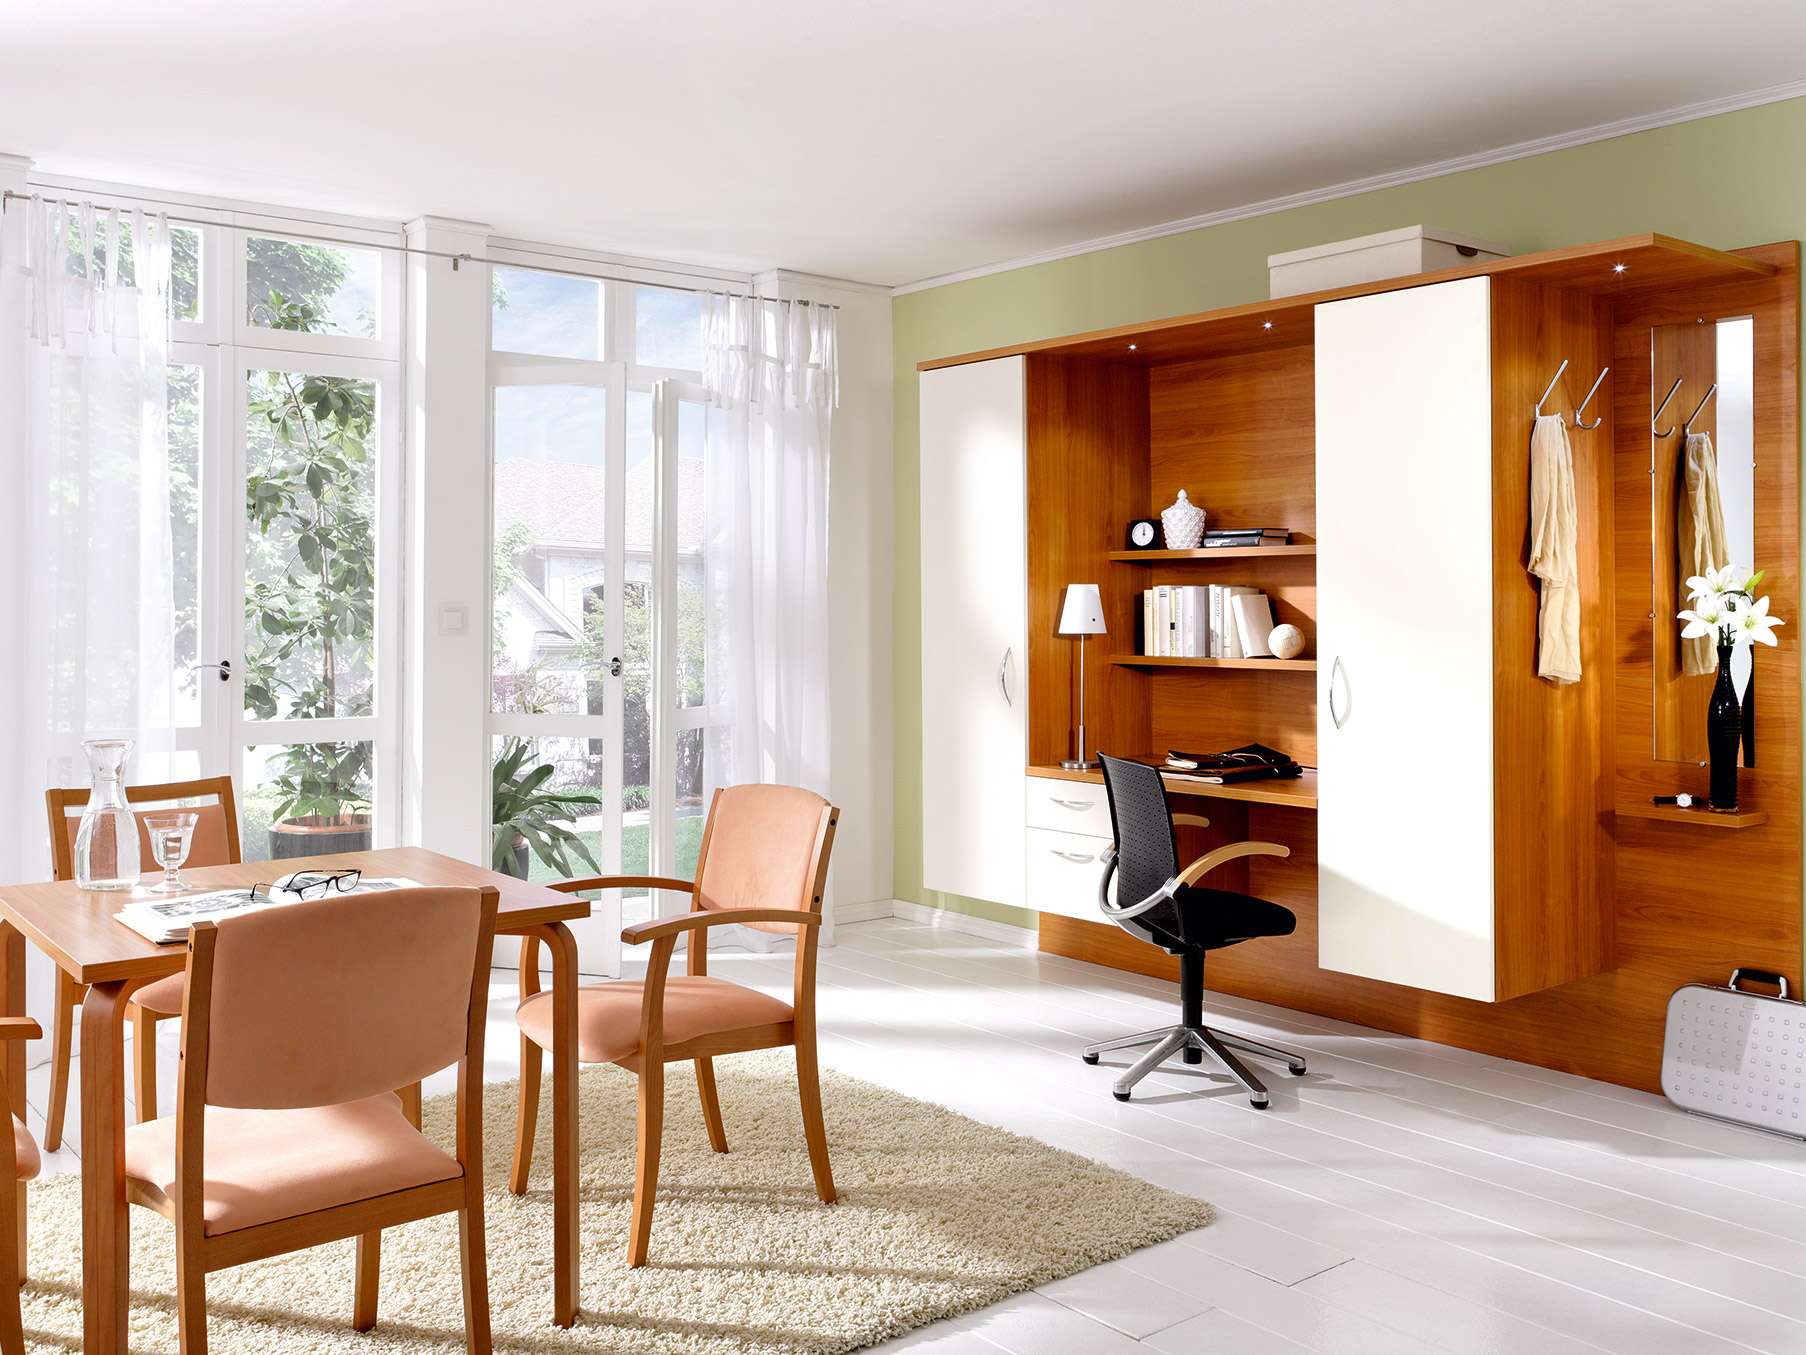 Inrichting voor elke kamer met het meubelprogramma Adrano